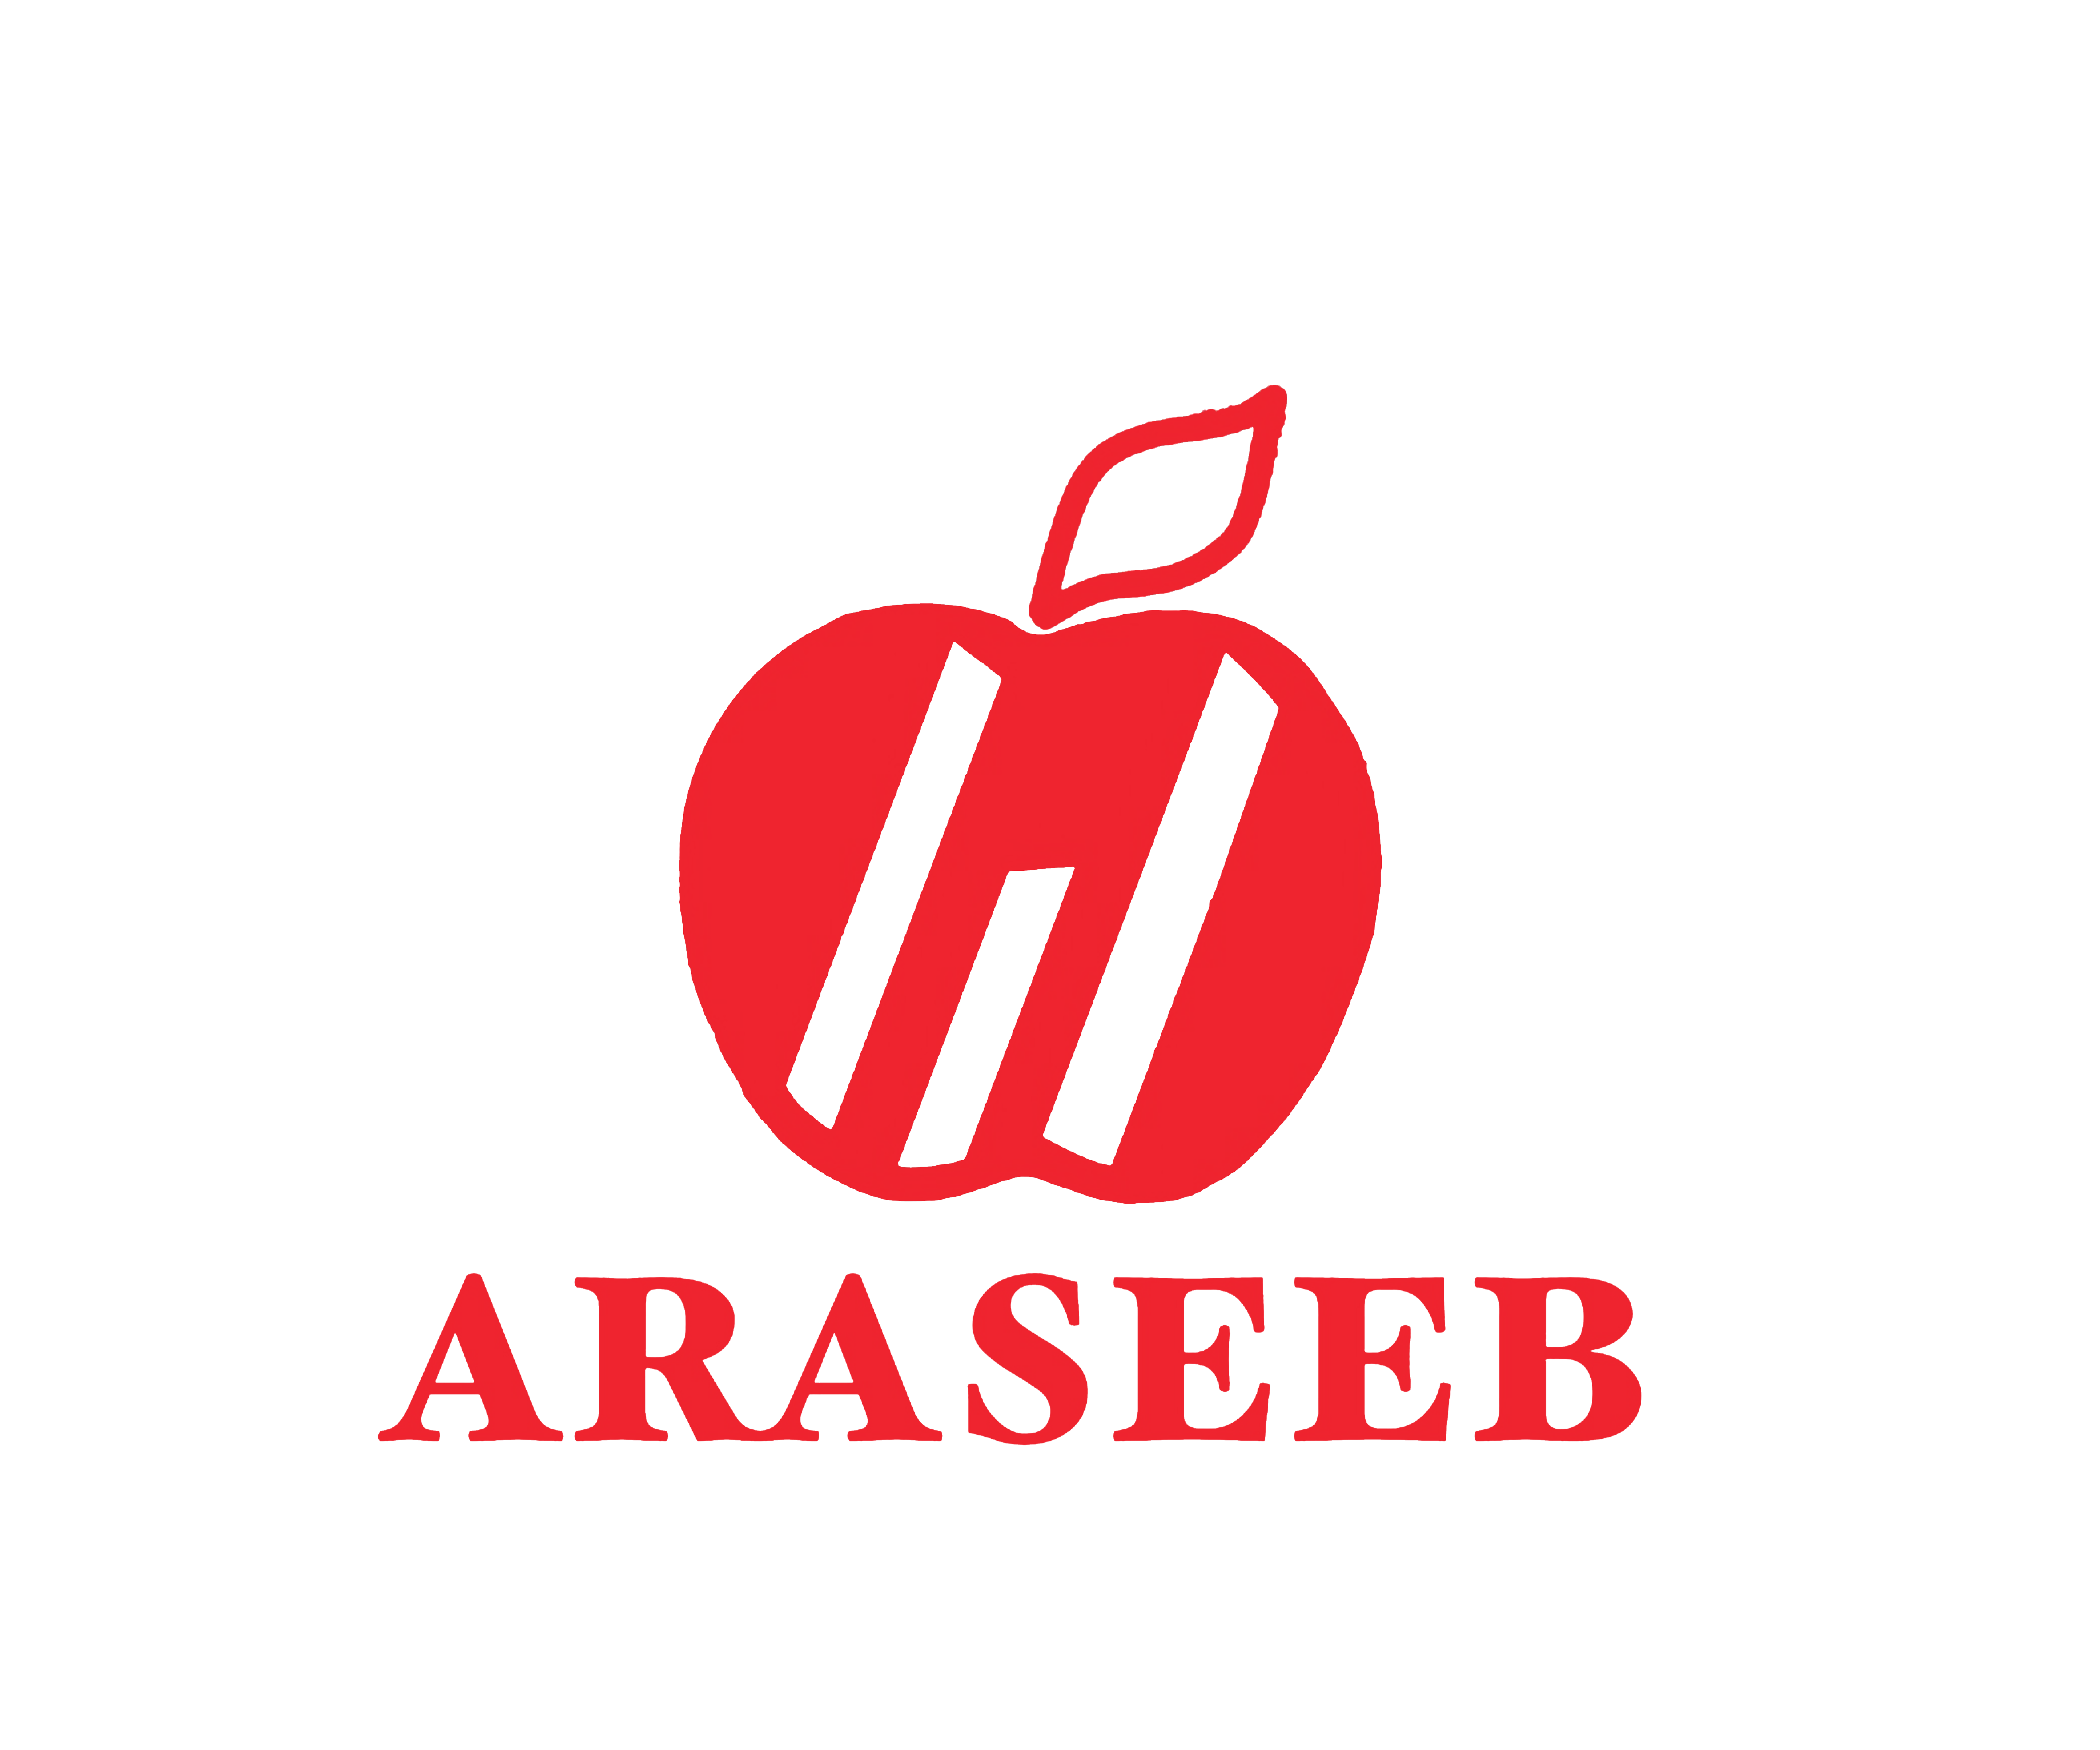 ARASEEB co